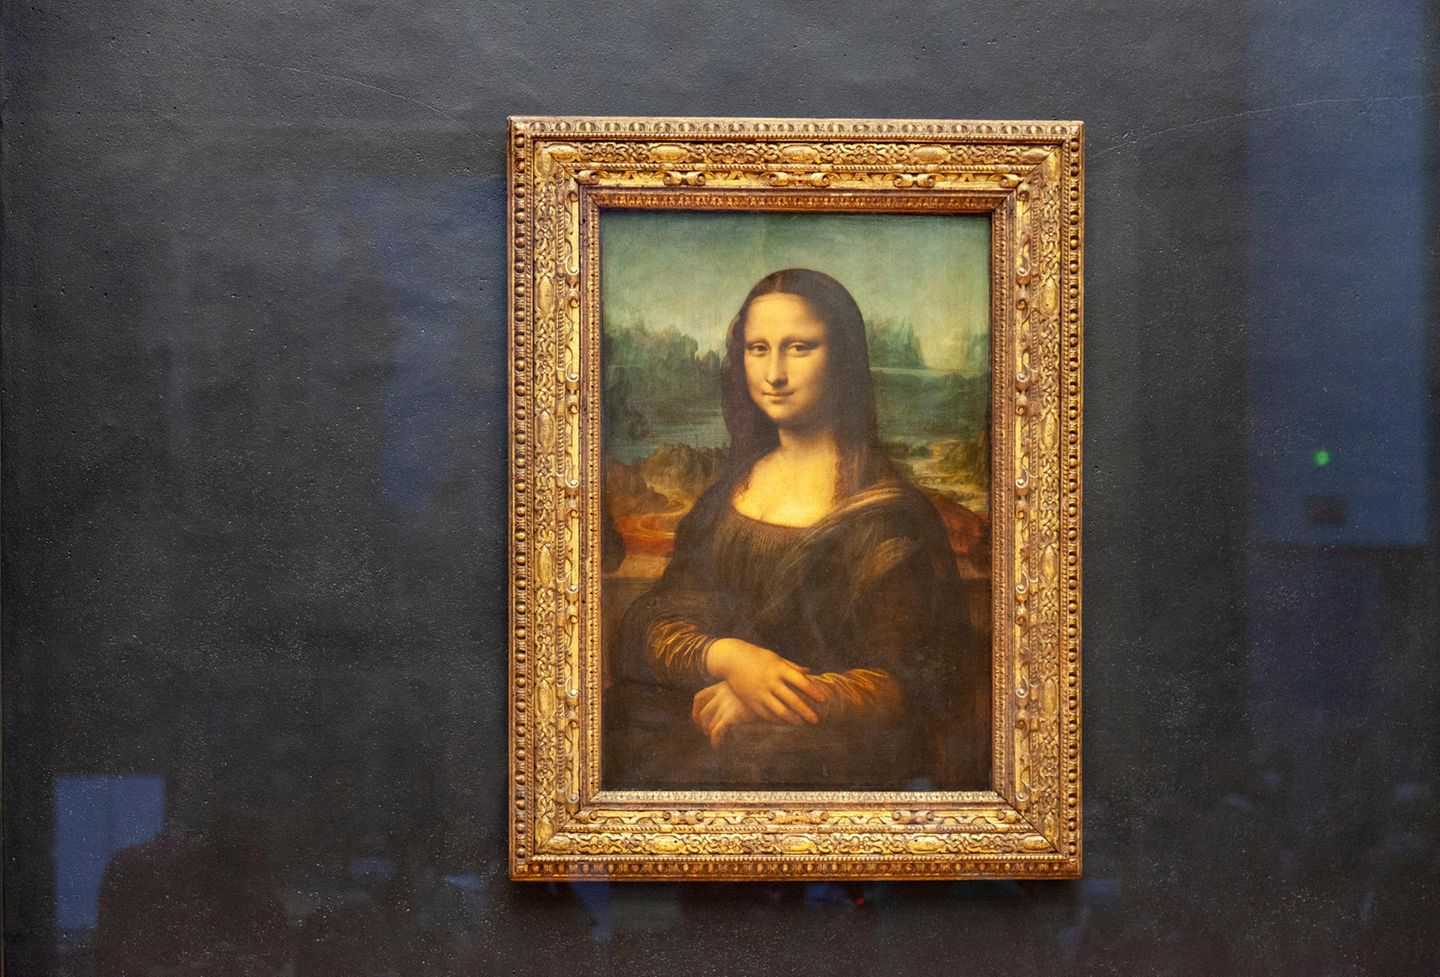 "Als Schülerin bin ich mit meiner Klasse nach Paris gefahren. Das war, glaube ich, 2010. Natürlich durfte der Louvre da nicht fehlen. Generell war ich zu dem Zeitpunkt nicht sonderlich kunstinteressiert, aber als wir in den Raum mit der Mona Lisa kamen, war ich überrascht und etwas... unbeeindruckt. Eine riesige Menschentraube stand vor ihr und auch ich wollte einen Blick erhaschen. Dabei stellte ich fest: Wow, ist die Mona Lisa klein! Das Gemälde ist gerade mal 77 x 55 cm. Heute weiß ich die Details auf der kleineren Leinwand zu schätzen, damals fühlte es sich für mich an, wie viel Lärm um nichts. Stattdessen habe ich mir lieber die riesigen detailreichen Gemälde in den anderen Räumlichkeiten angesehen und mit meinen Freund:innen nach allerlei Kleinigkeiten Ausschau gehalten." Lena